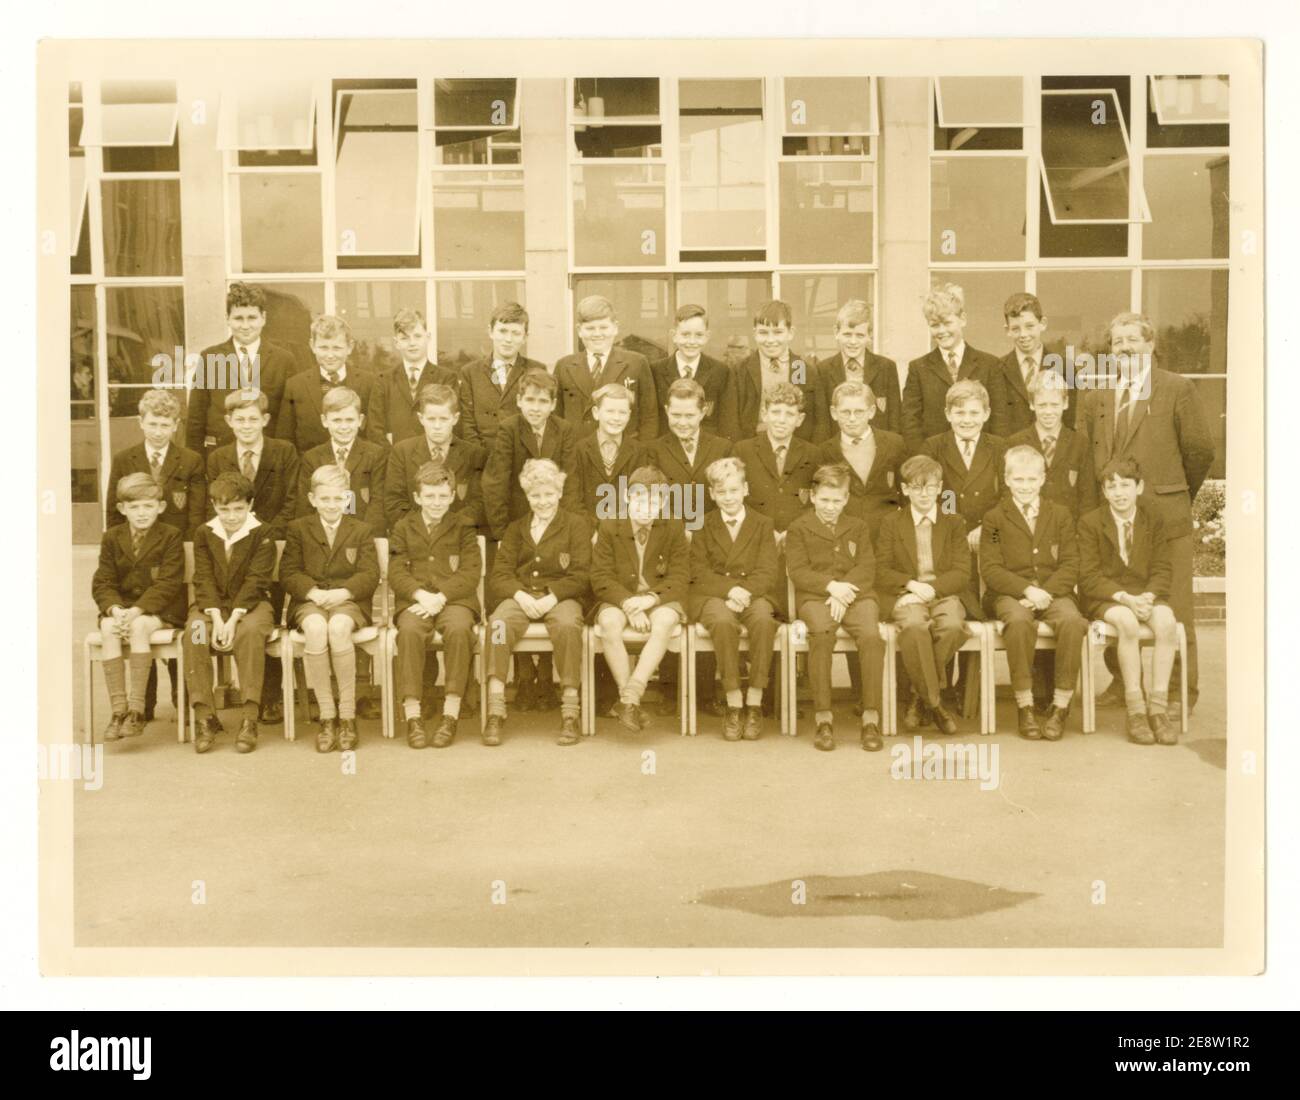 Foto der Gruppenschule der 1960er Jahre von der Rushey Mead Sekundarschule, Leicestershire, England, Großbritannien, datiert 1963 Stockfoto